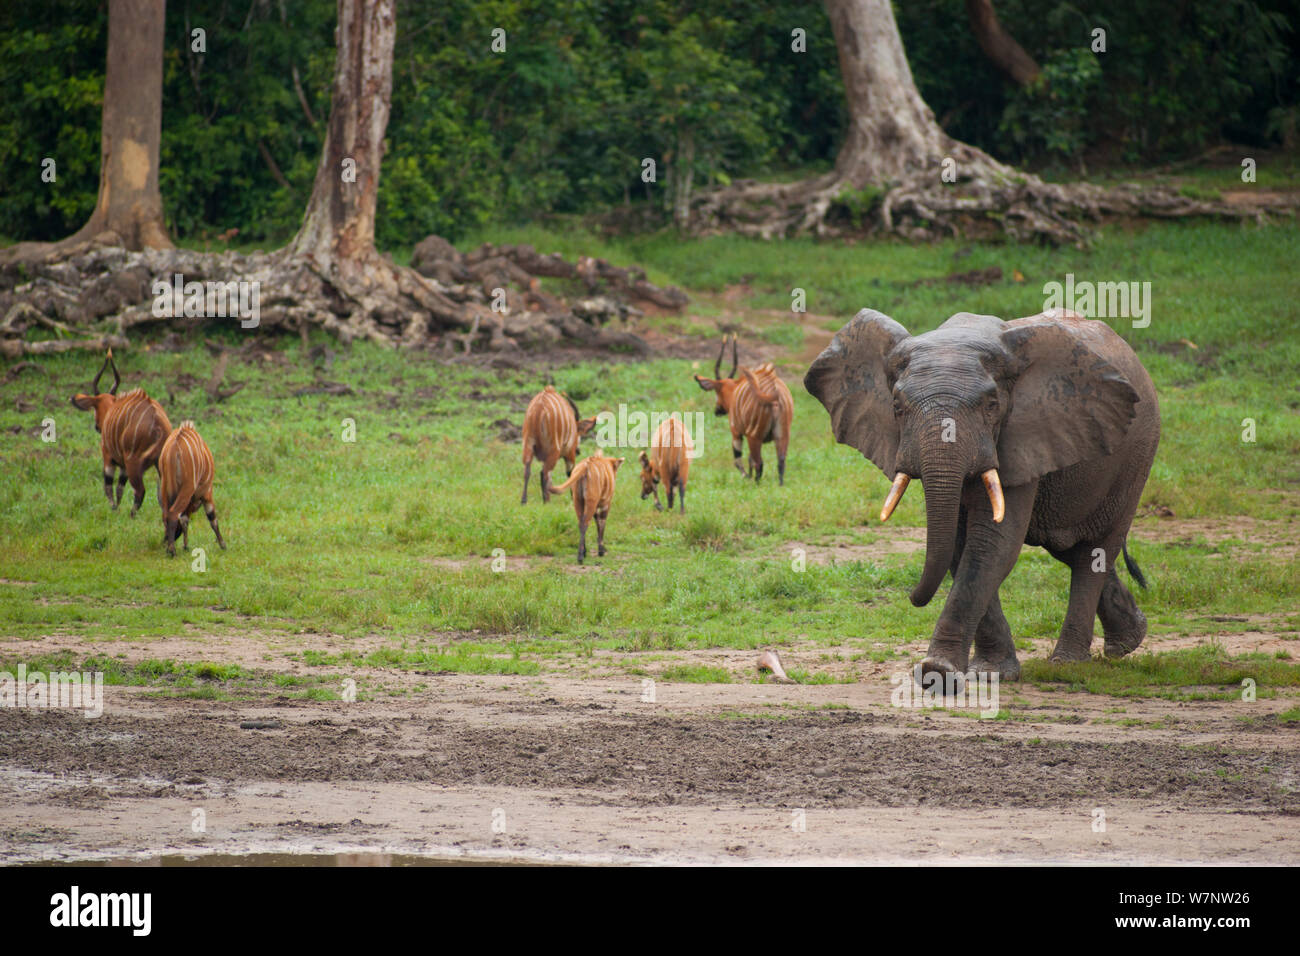 African Forest elephant (Loxodonta africana cyclotis) entering bai whilst group of Bongo antelope (Tragelaphus euryceros) leave, Dzanga Bai, Dzanga-Ndoki National Park, Central African Republic Stock Photo